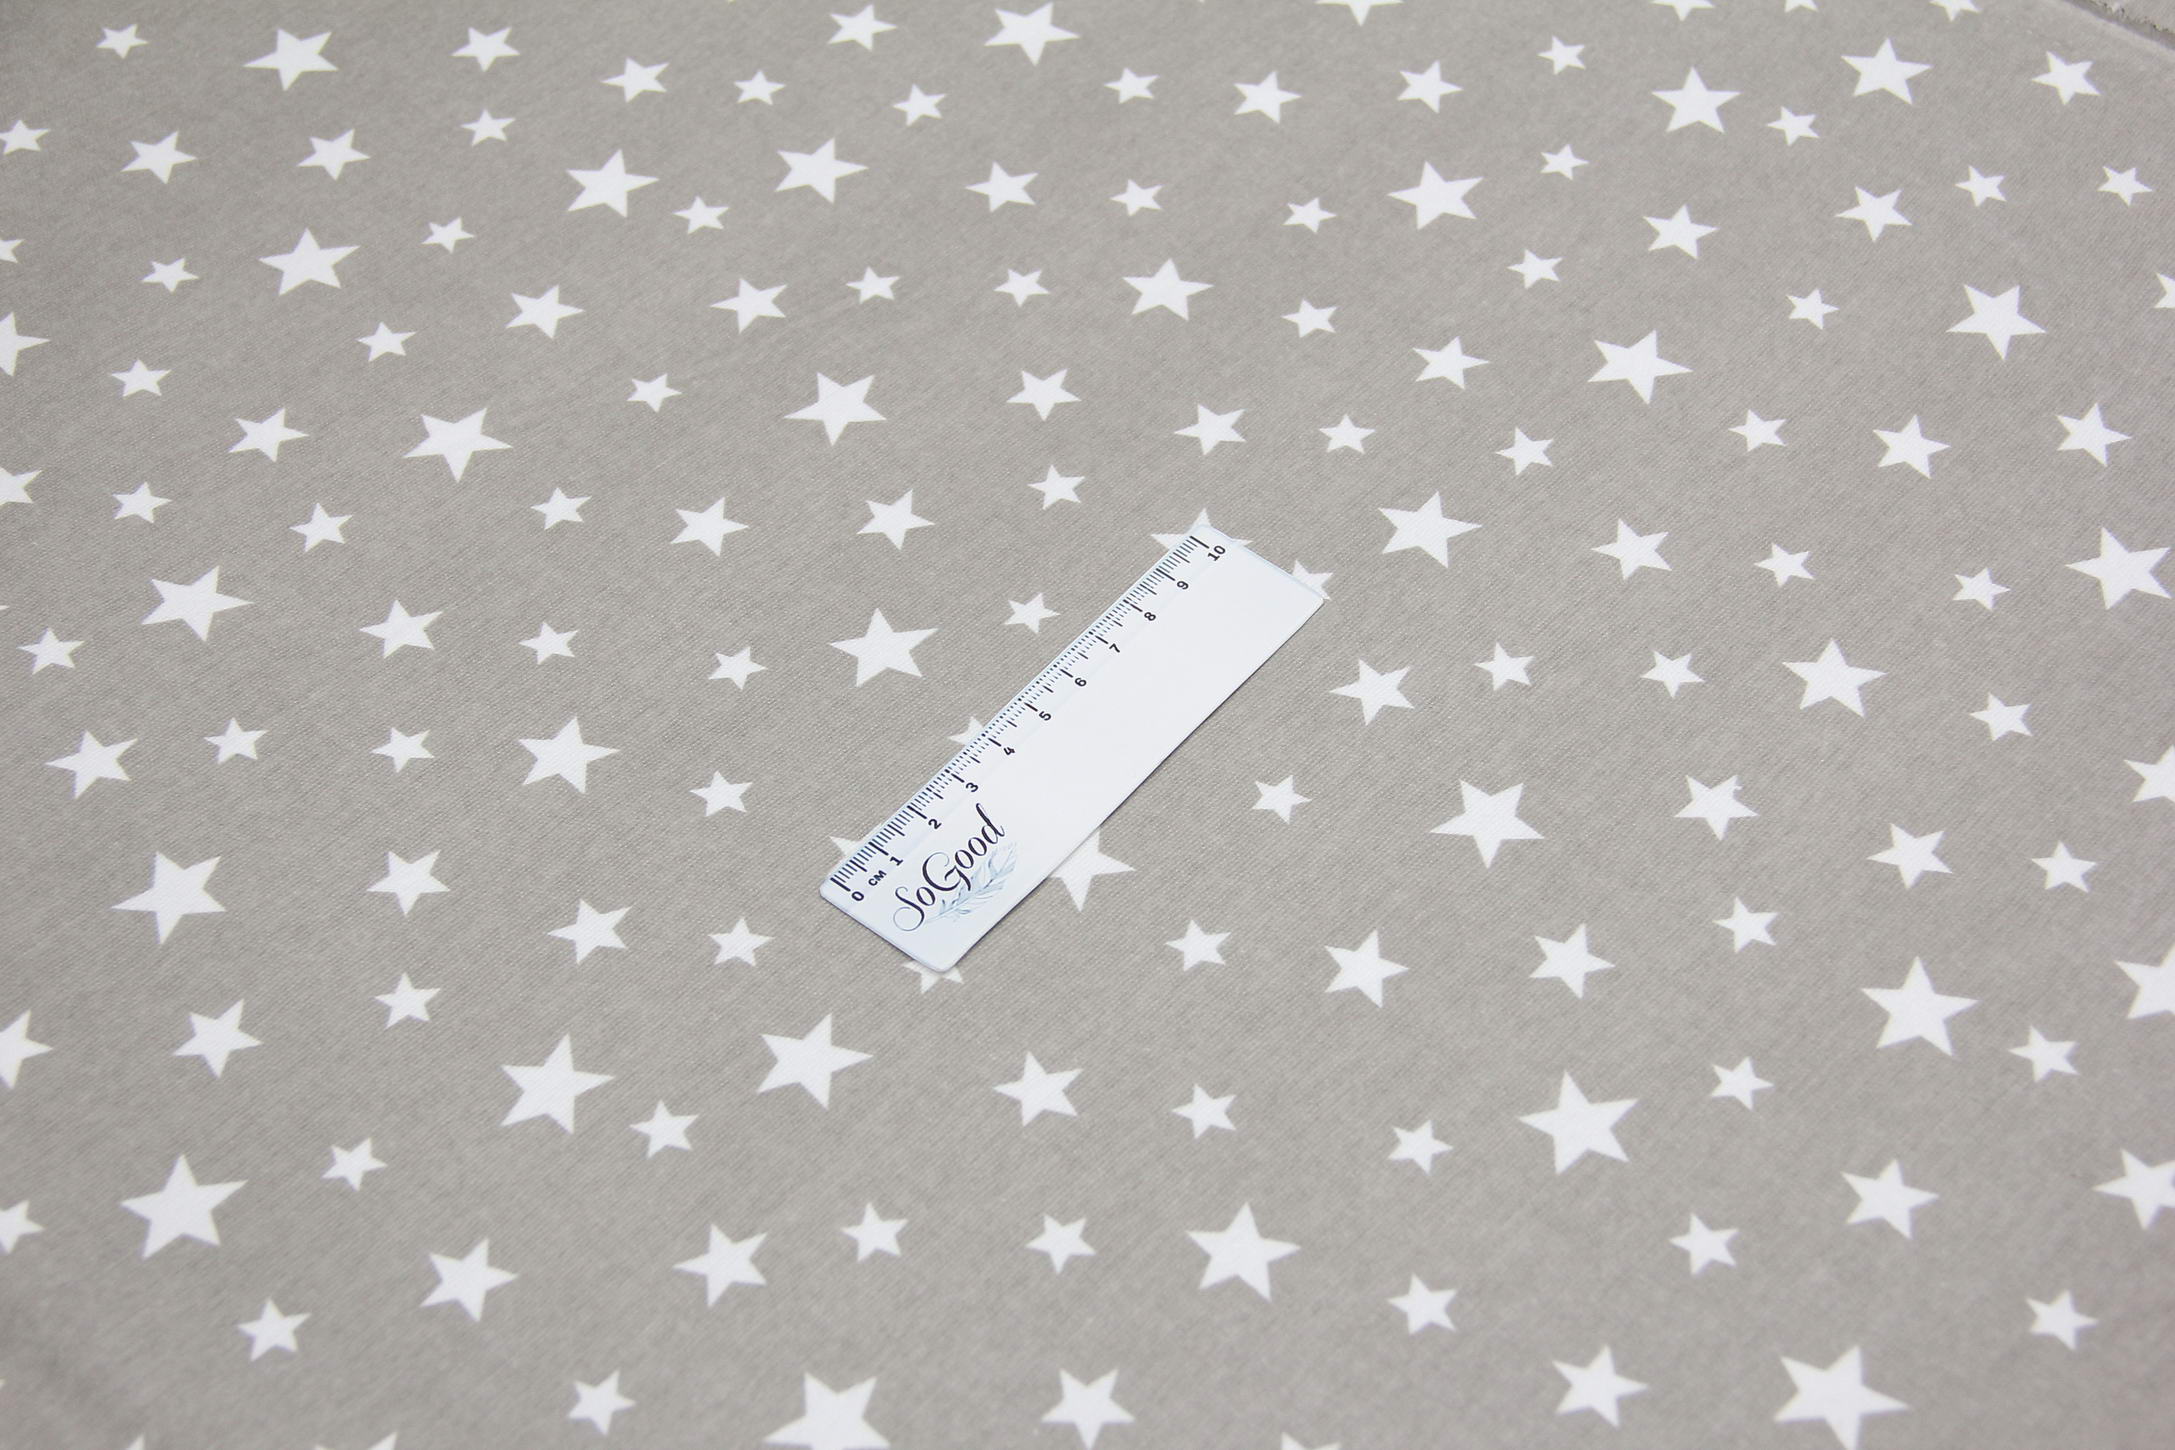 Ткань Фланель Звезды белые на бежевом, Турция, ширина 240 см, плотность 160 г/м2